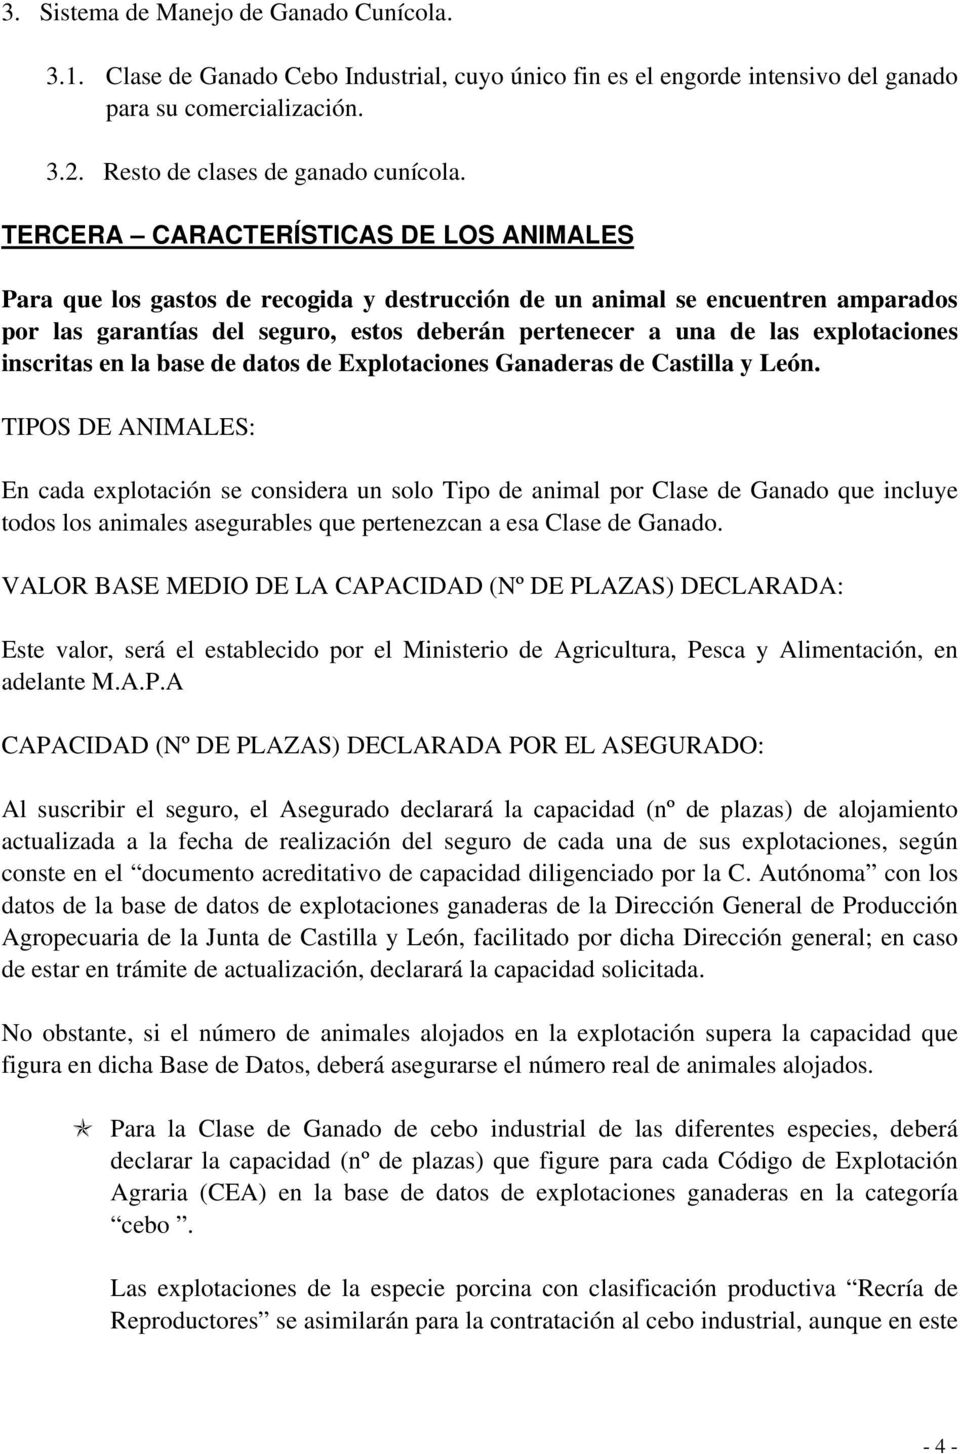 explotaciones inscritas en la base de datos de Explotaciones Ganaderas de Castilla y León.